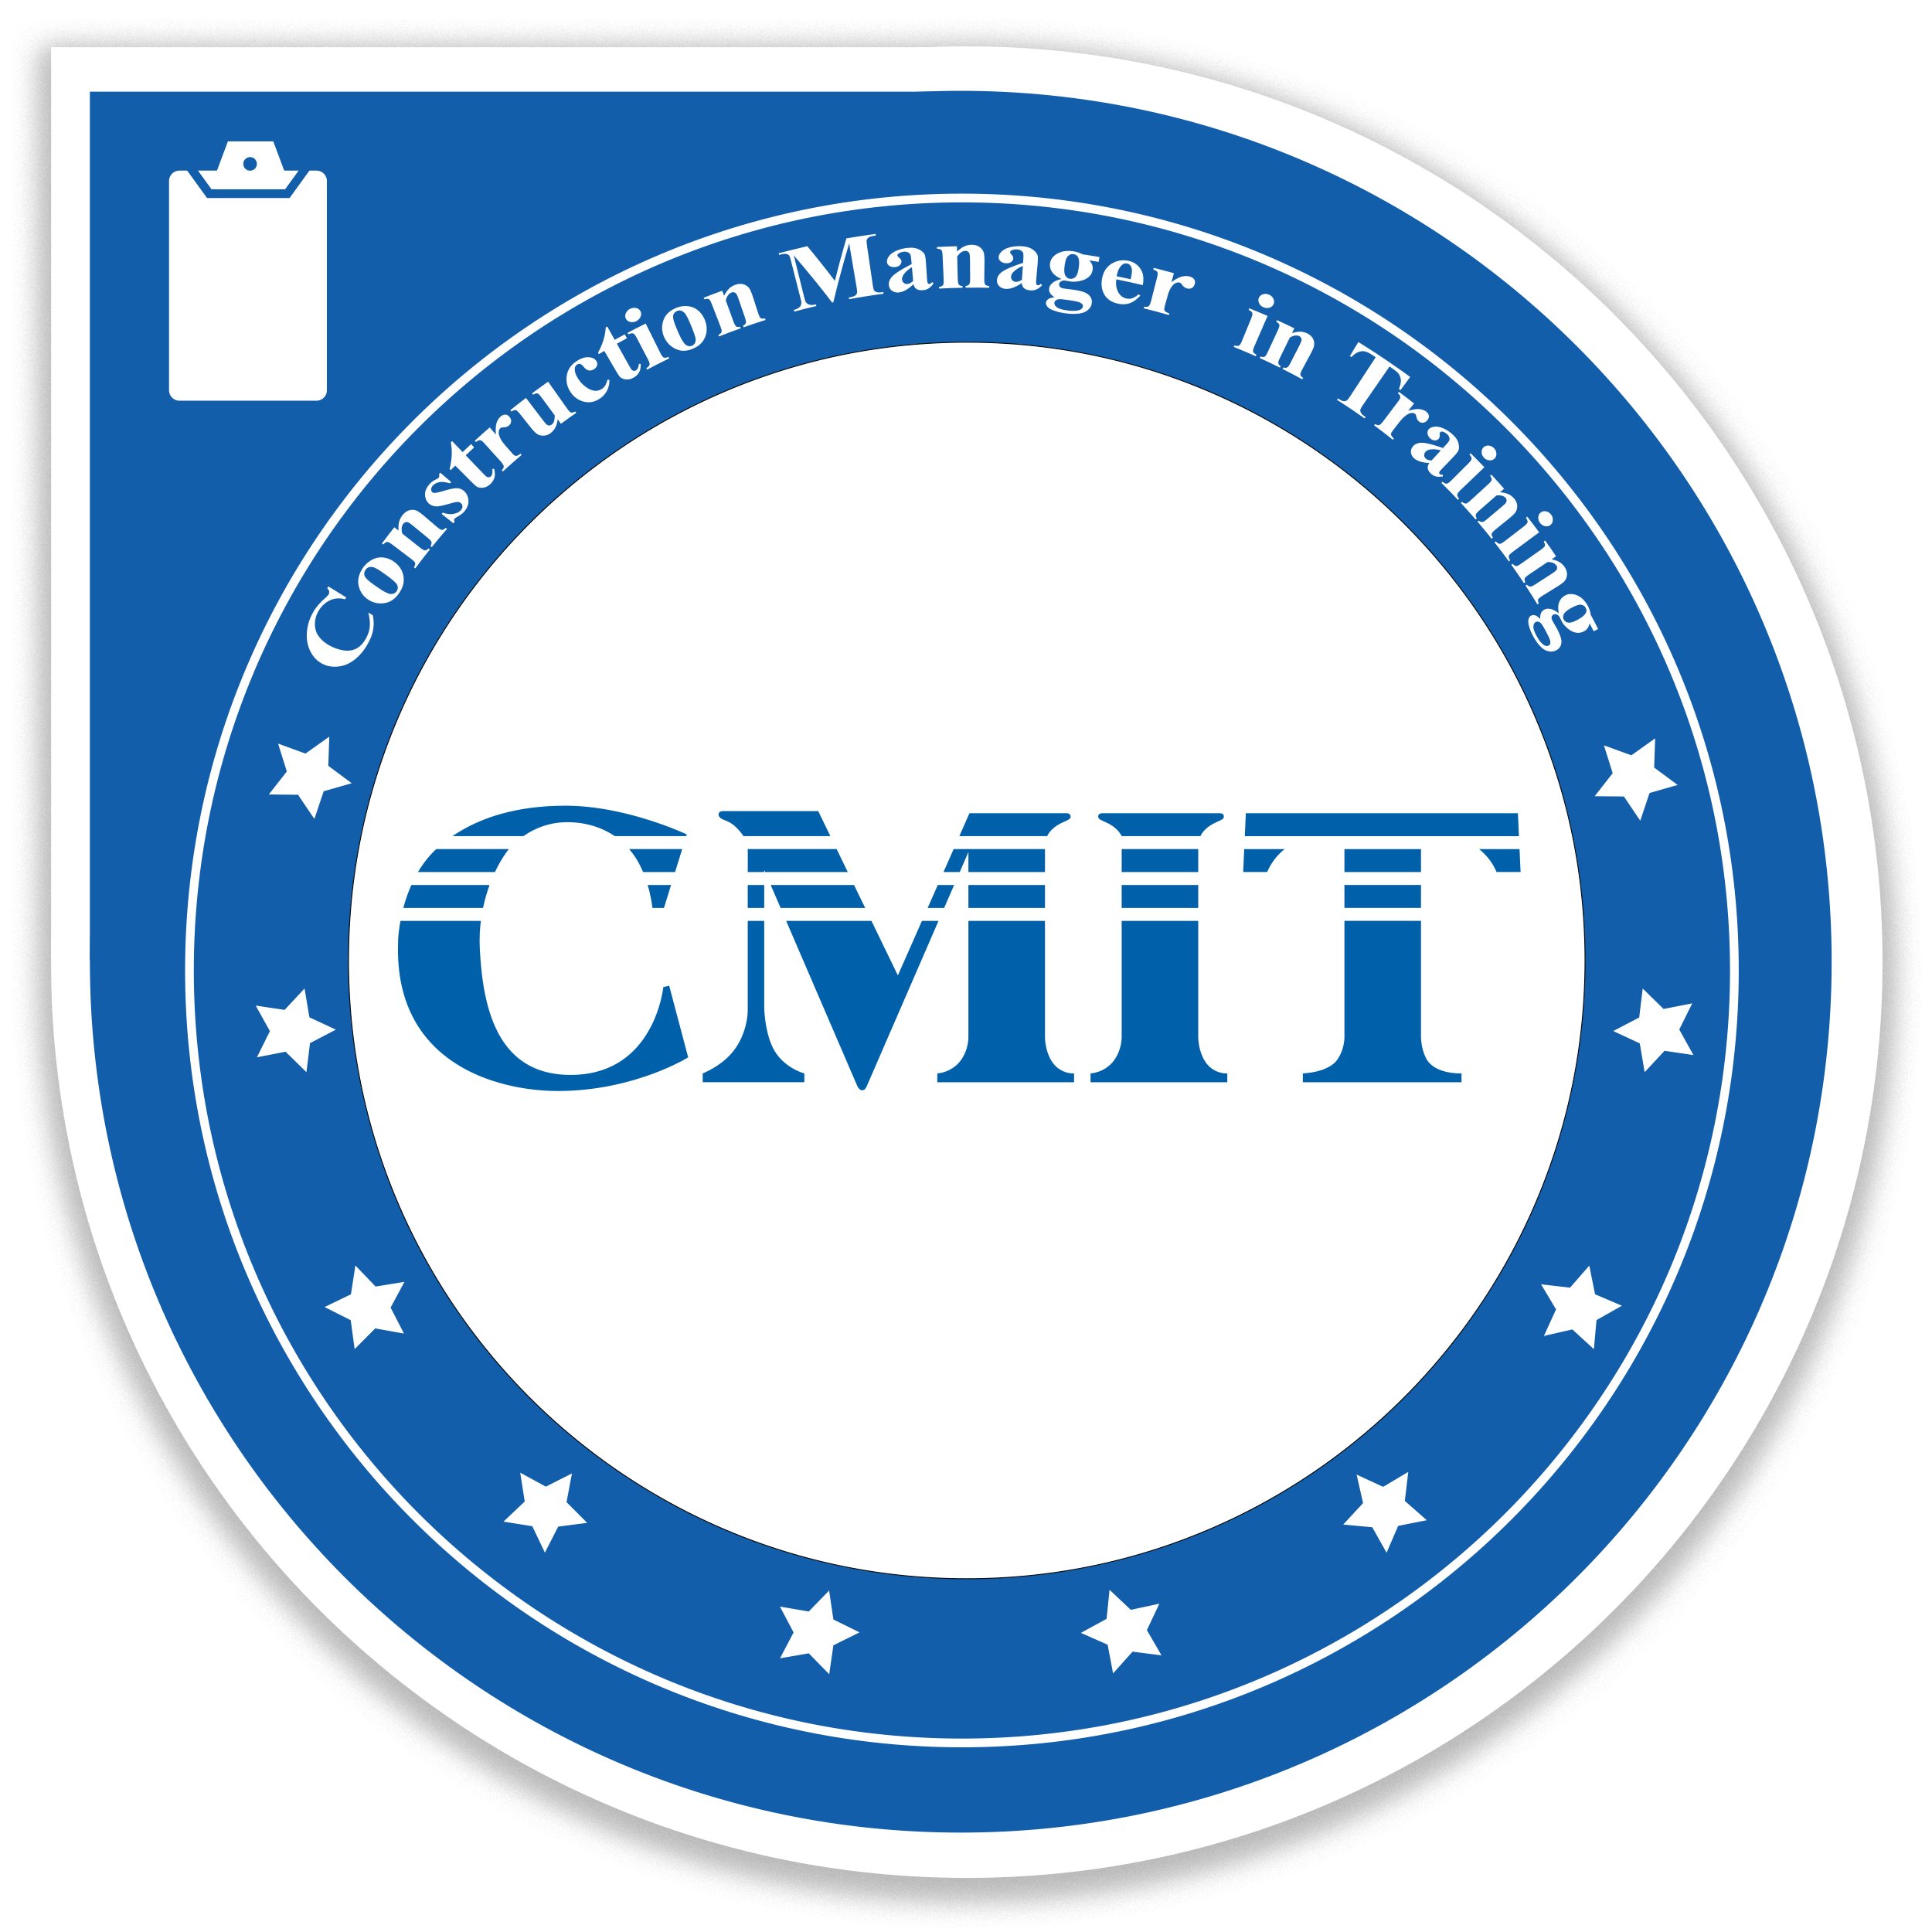 CMIT Badge